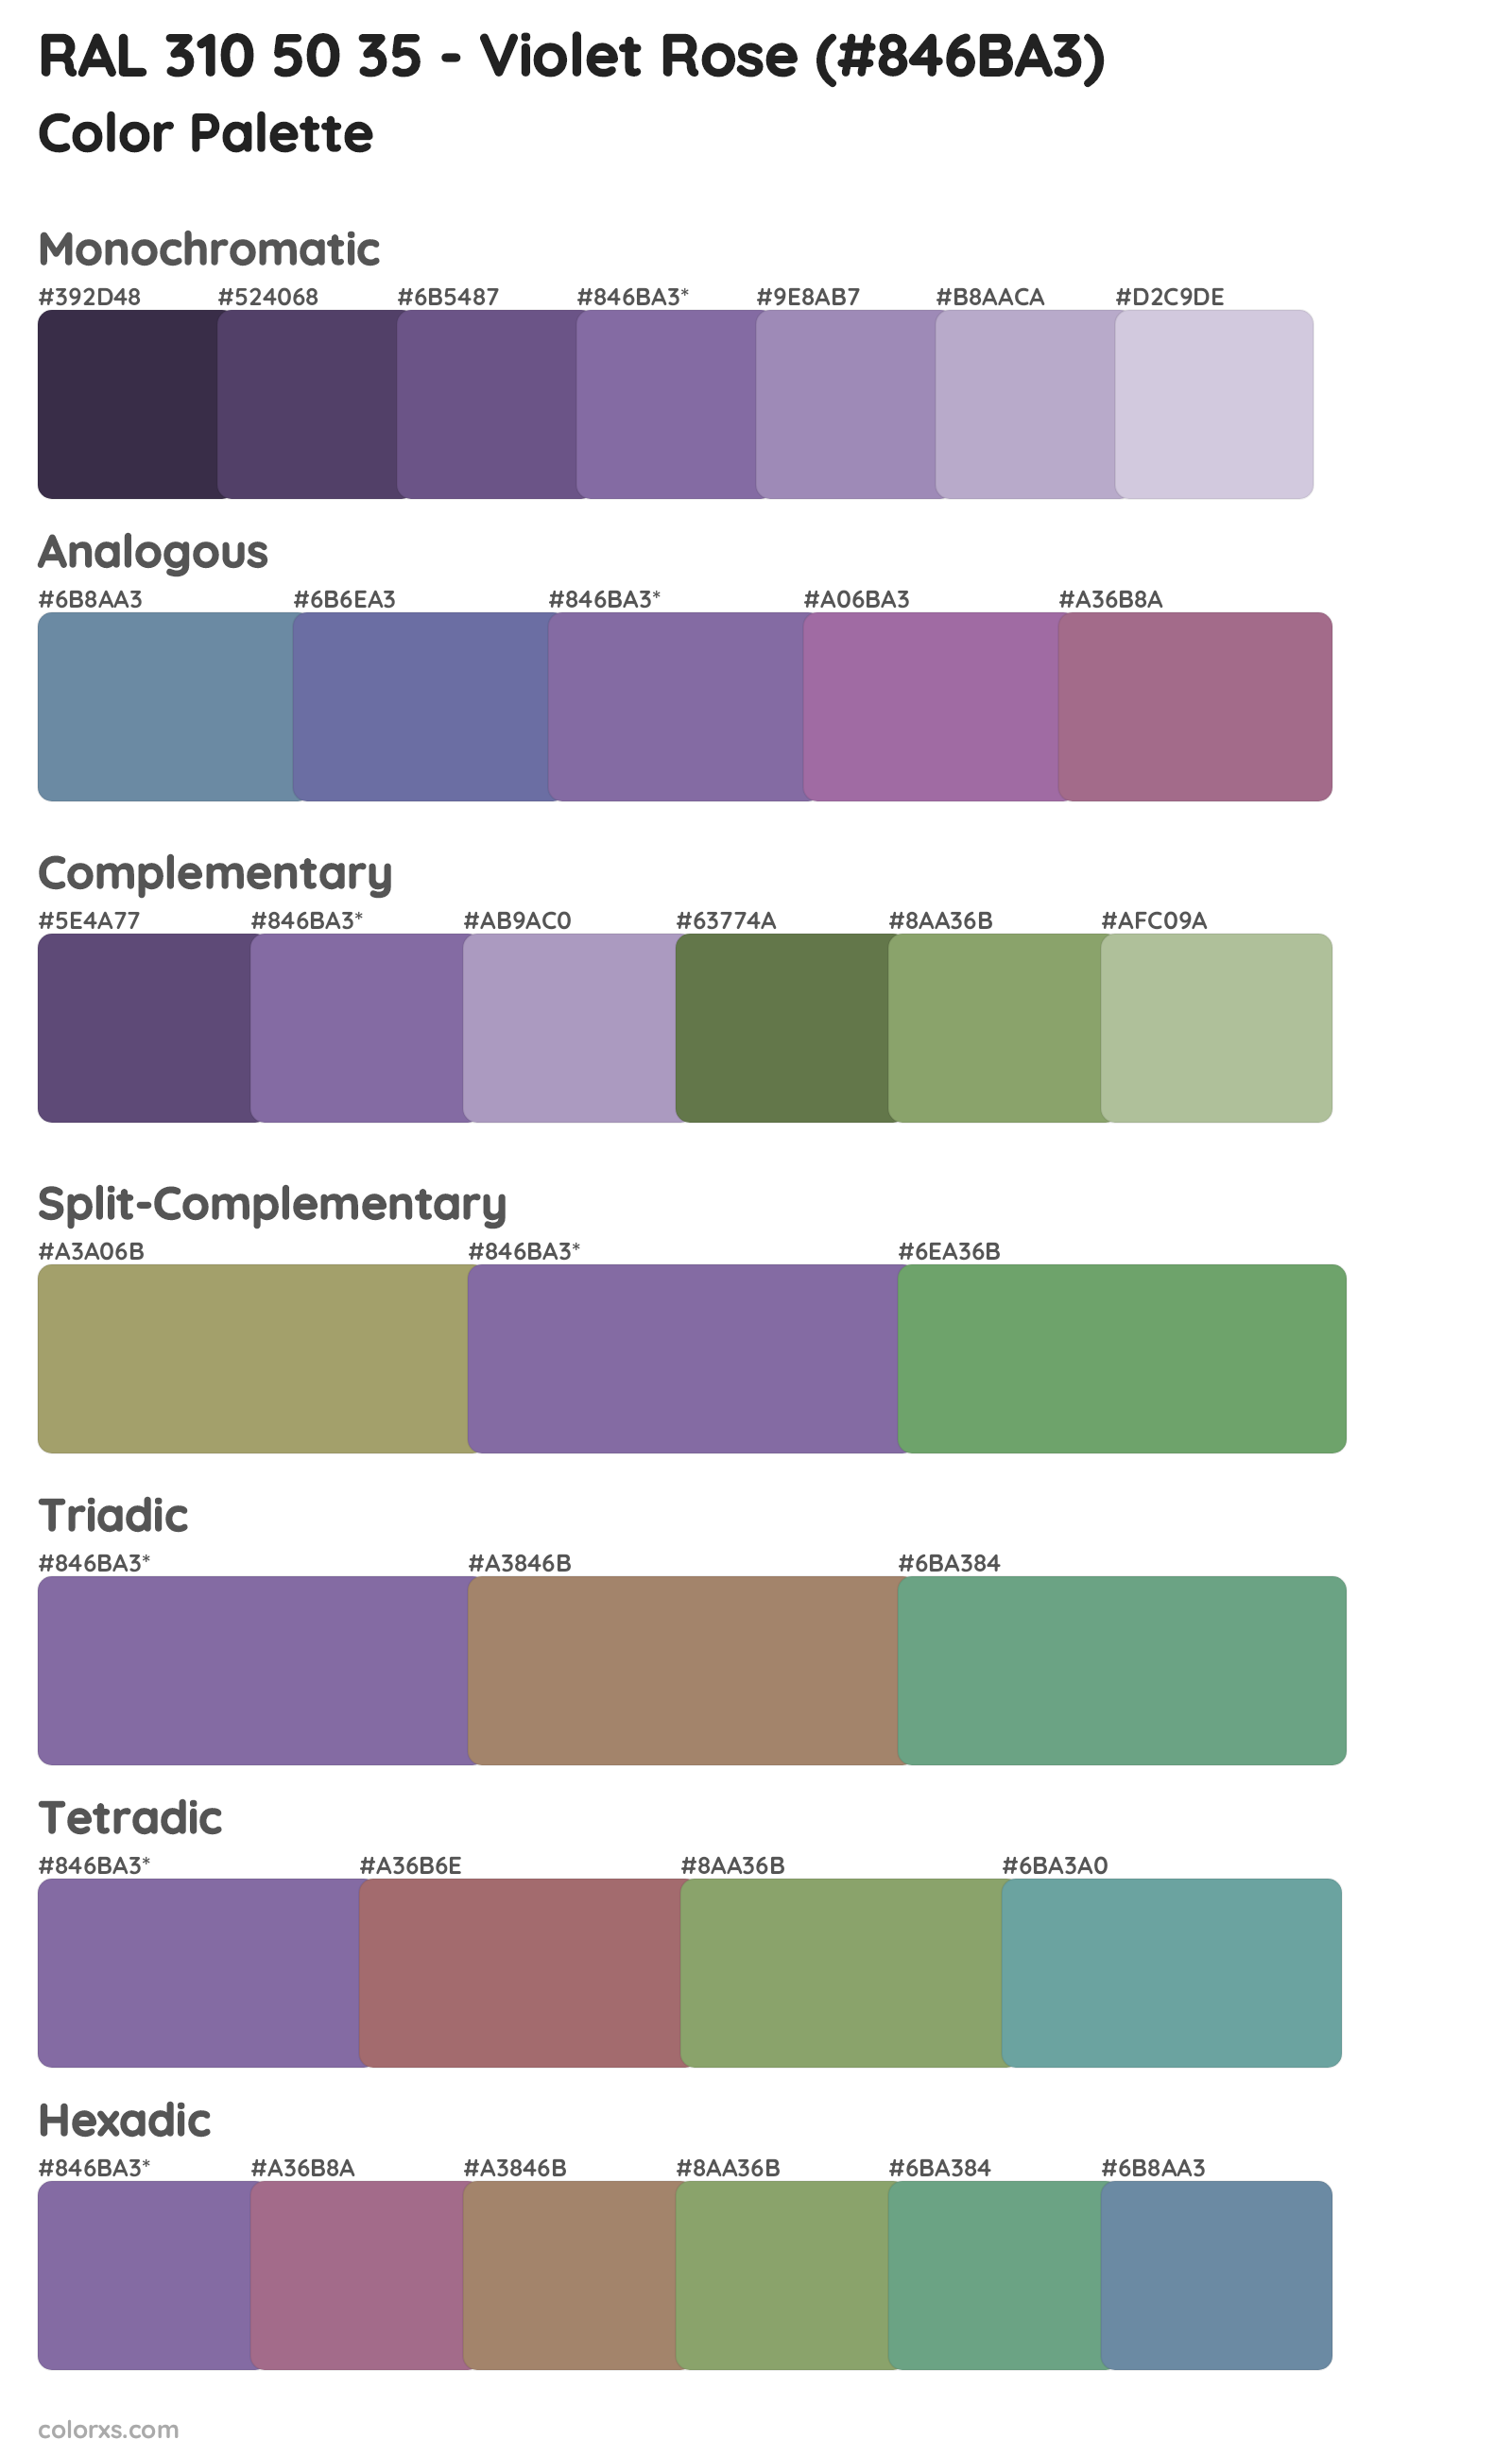 RAL 310 50 35 - Violet Rose Color Scheme Palettes